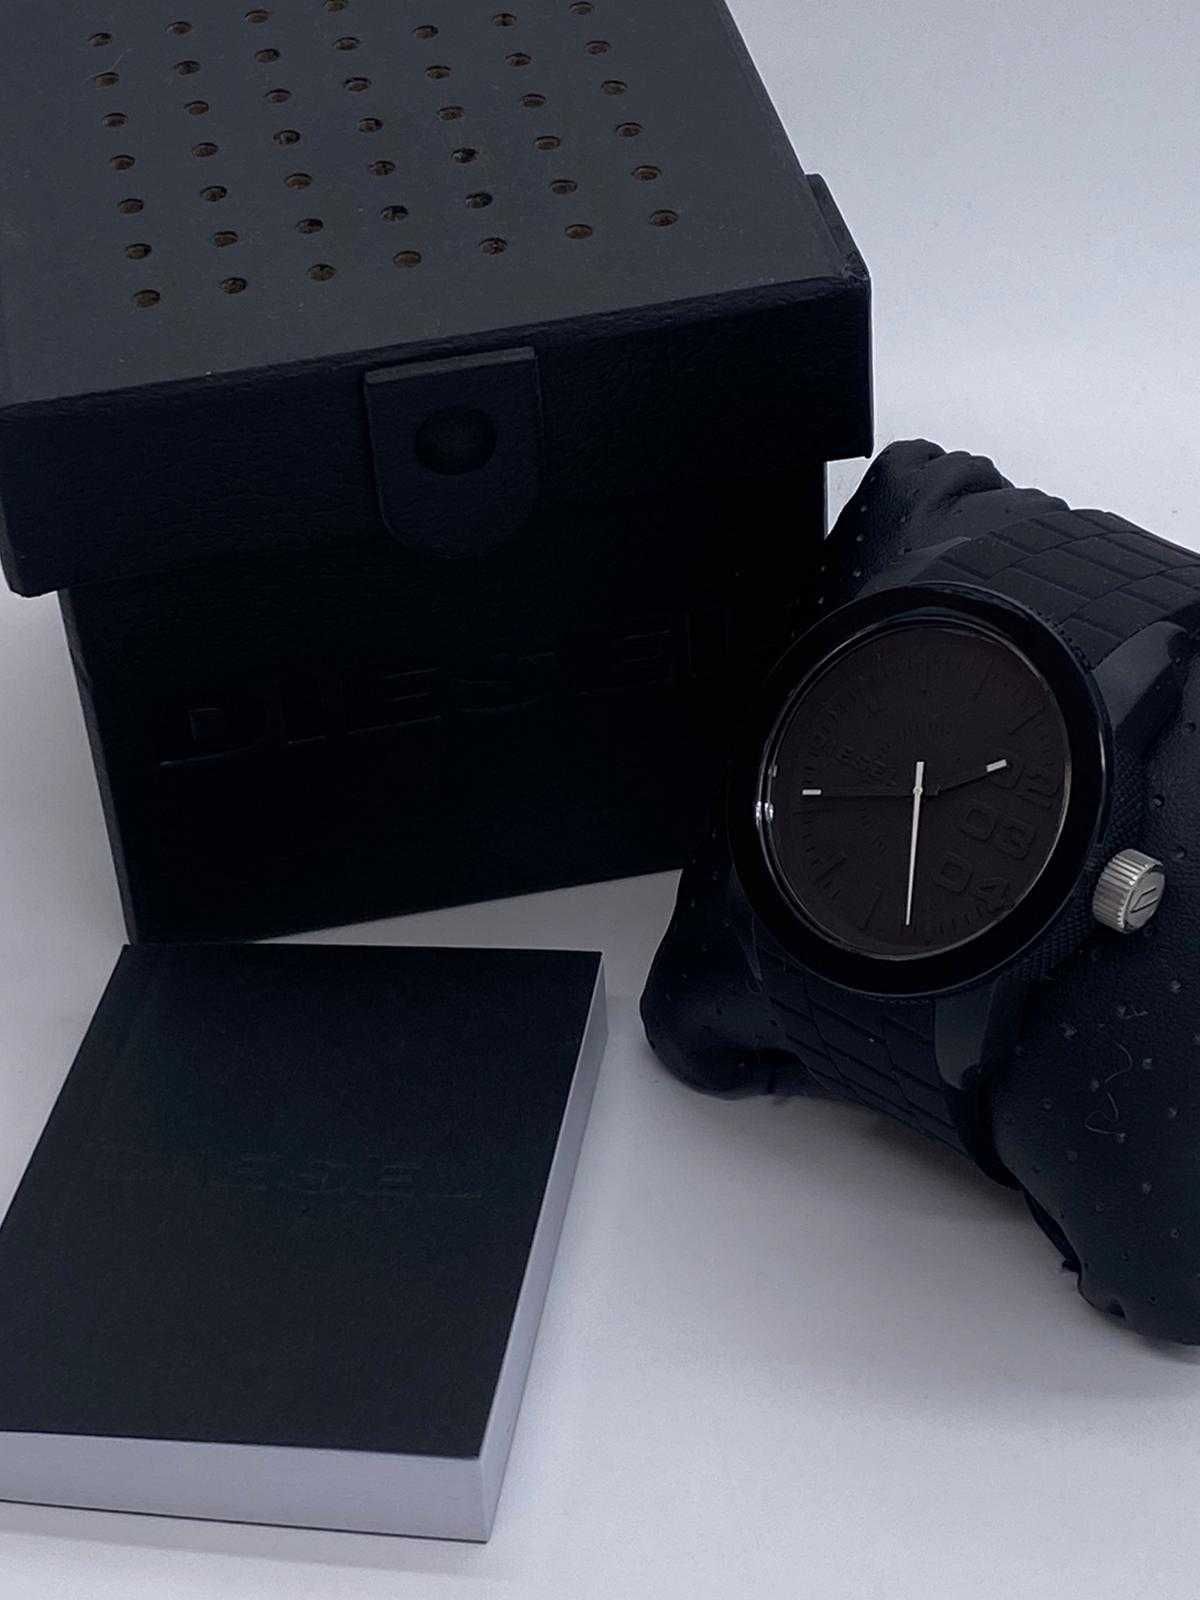 Diesel Dz1437 zegarek męski czarny silikonowy mat matowy klasyczny